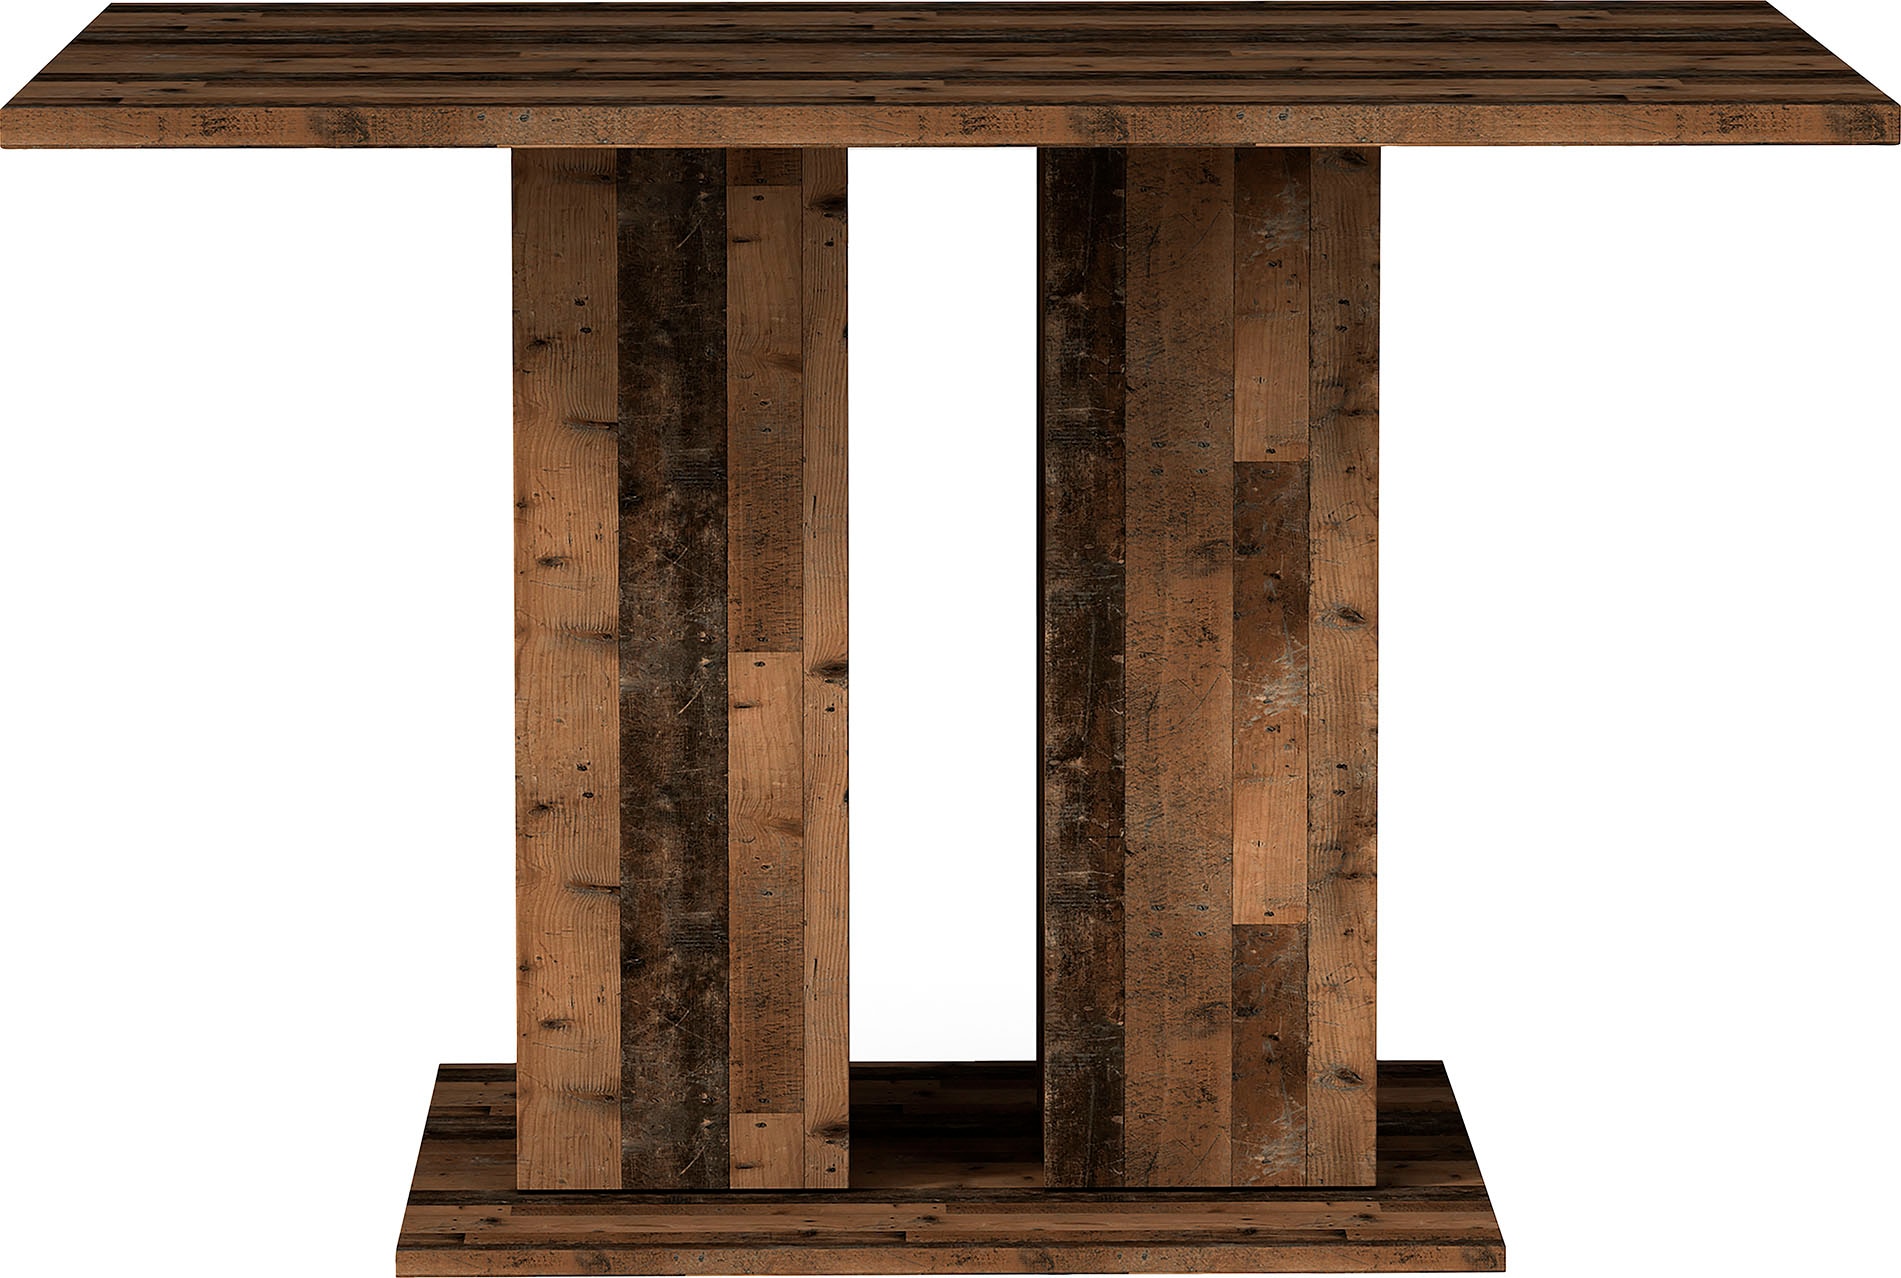 Homexperts Säulen-Esstisch »Mulan«, Breite 110 cm mit Regalfächern, in 3 Farben erhältlich